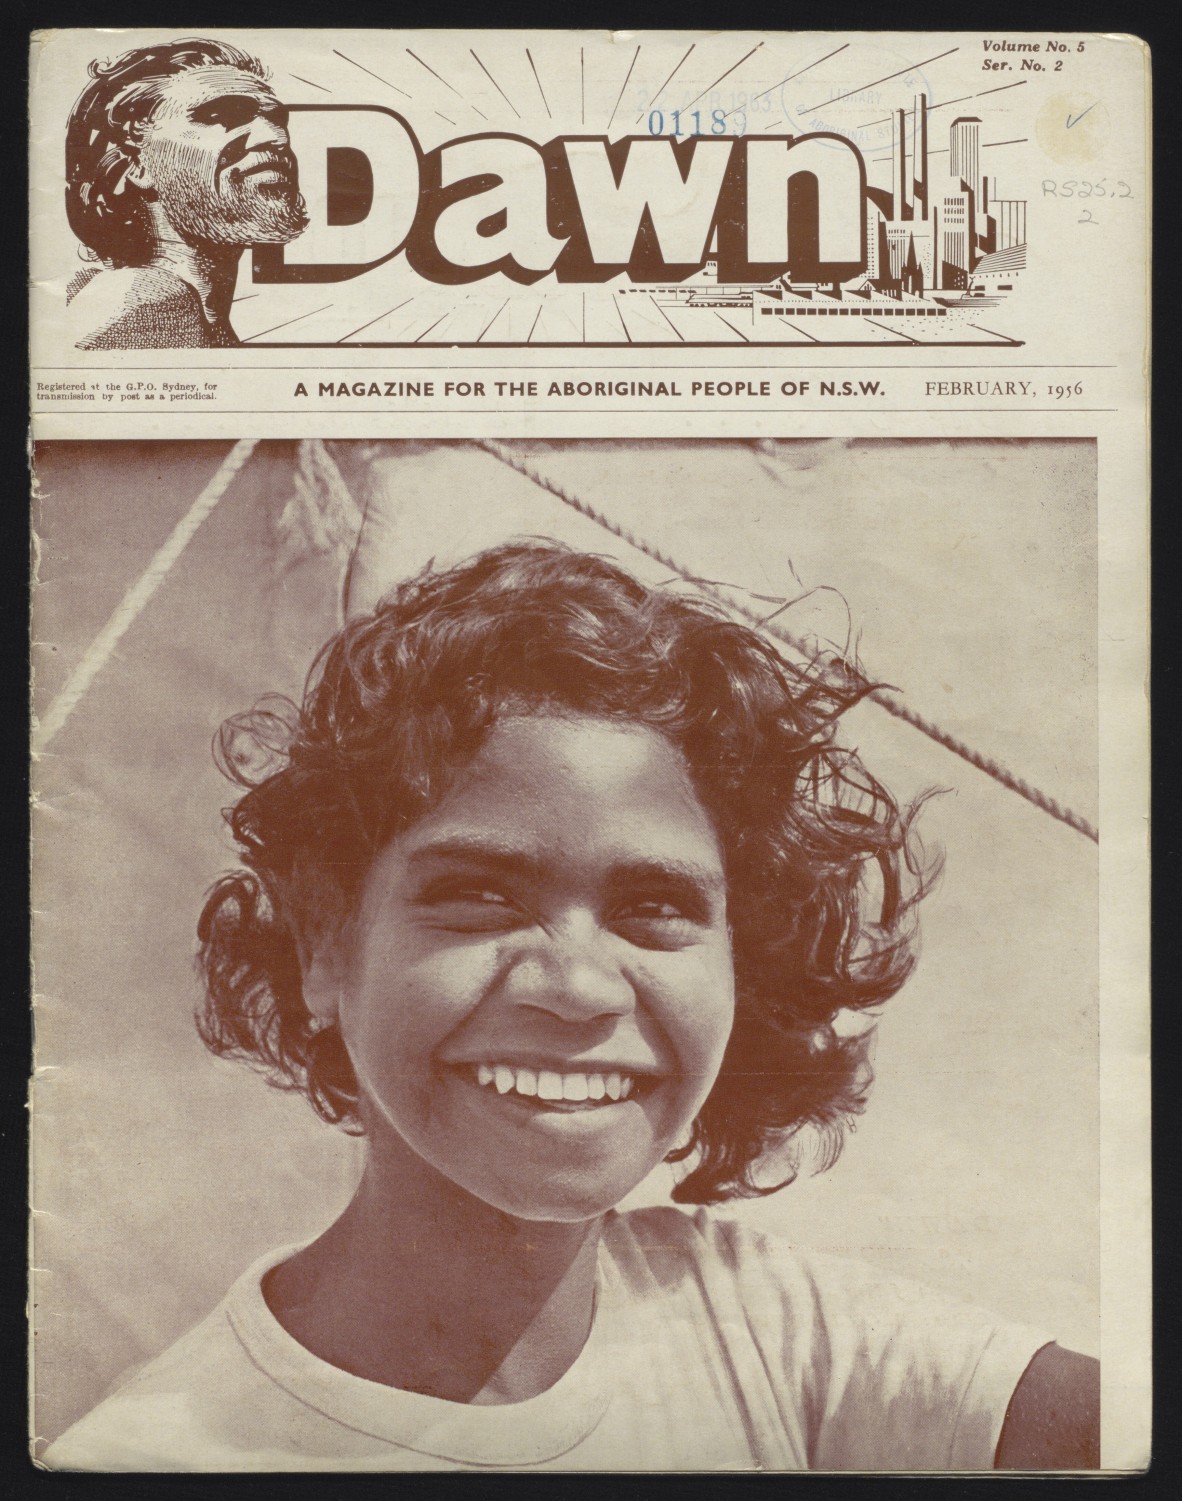 Grandma Joanie West on the cover of Dawn Magazine, February 1956.